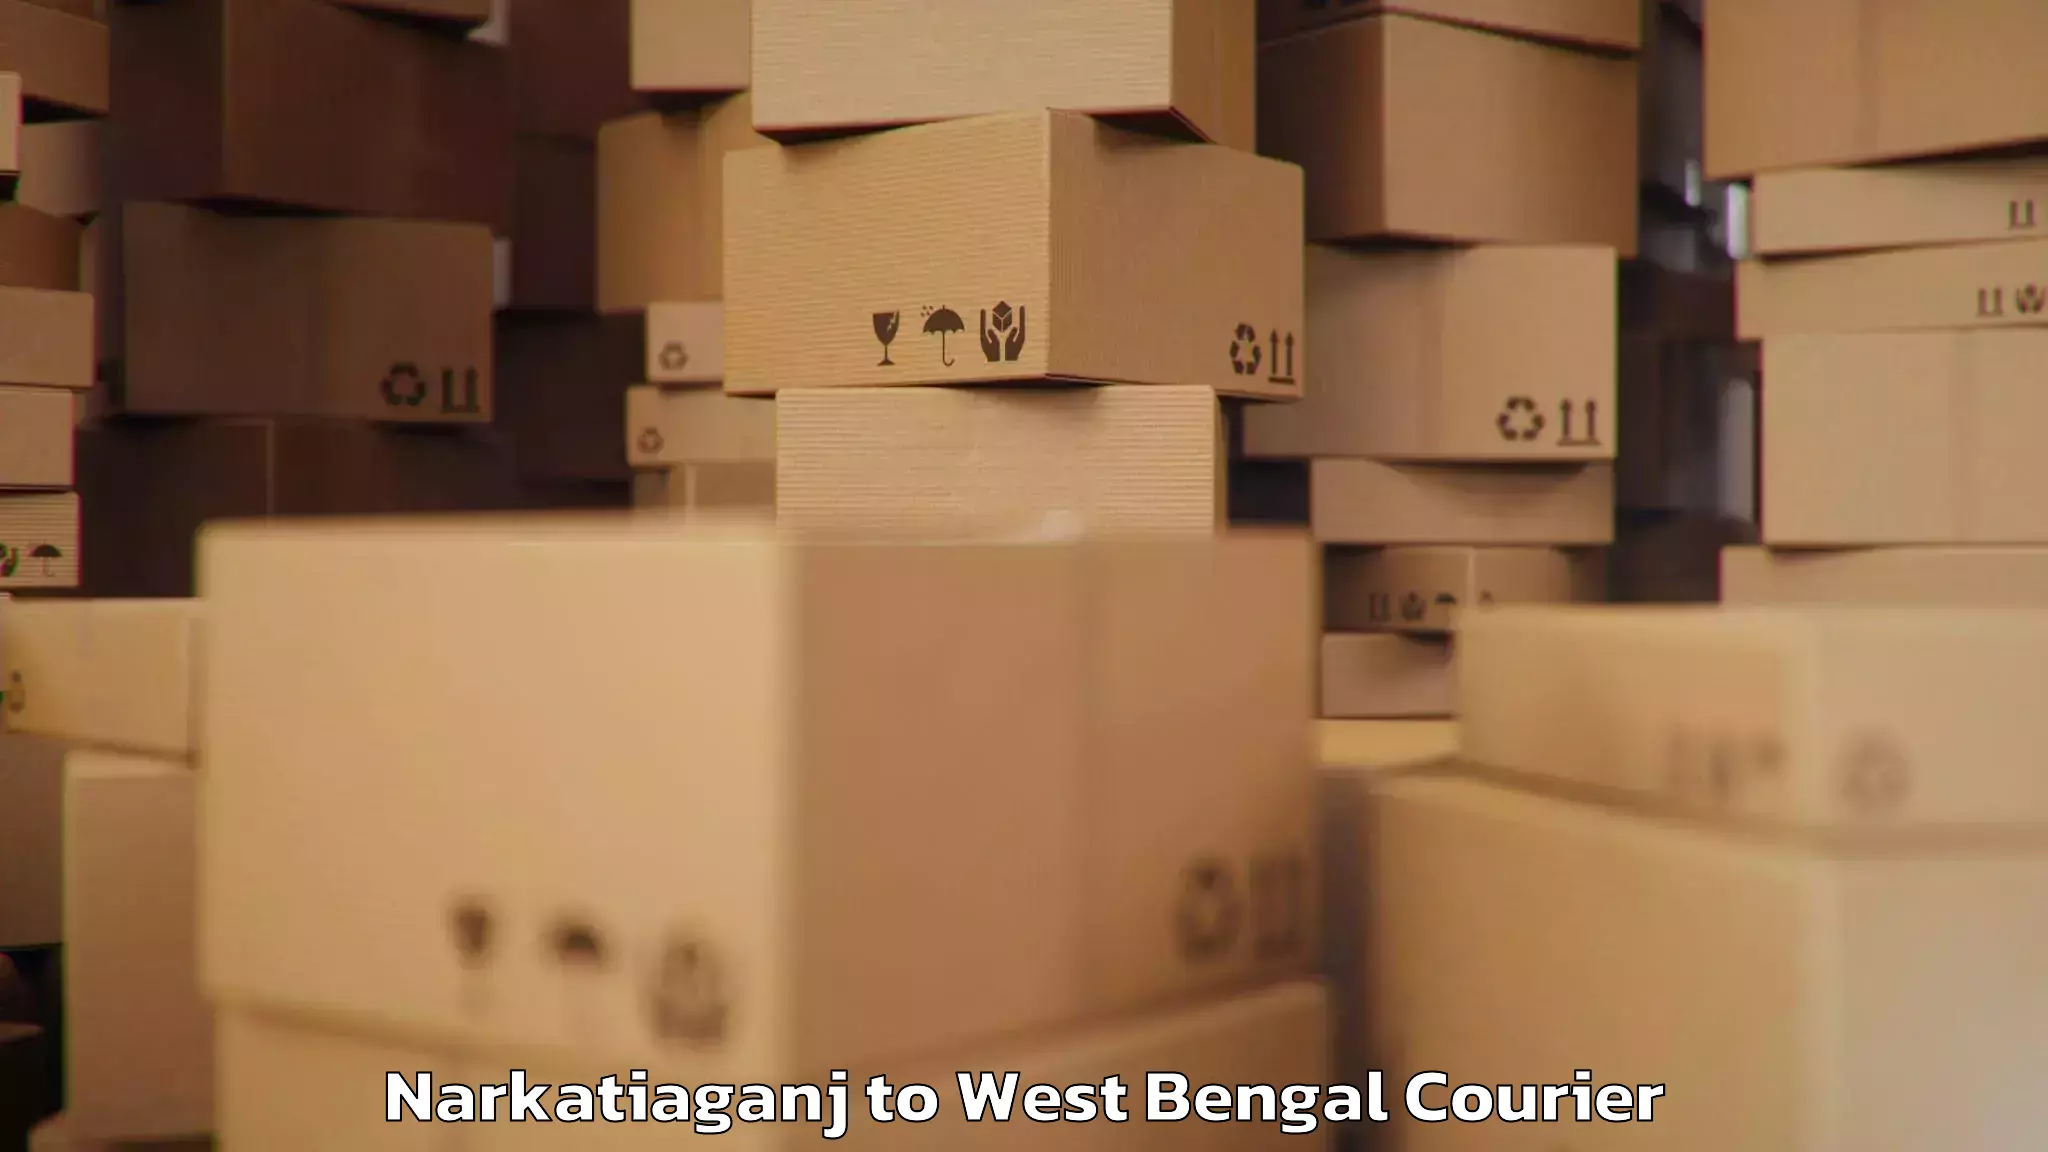 Digital baggage courier Narkatiaganj to Kolkata Port